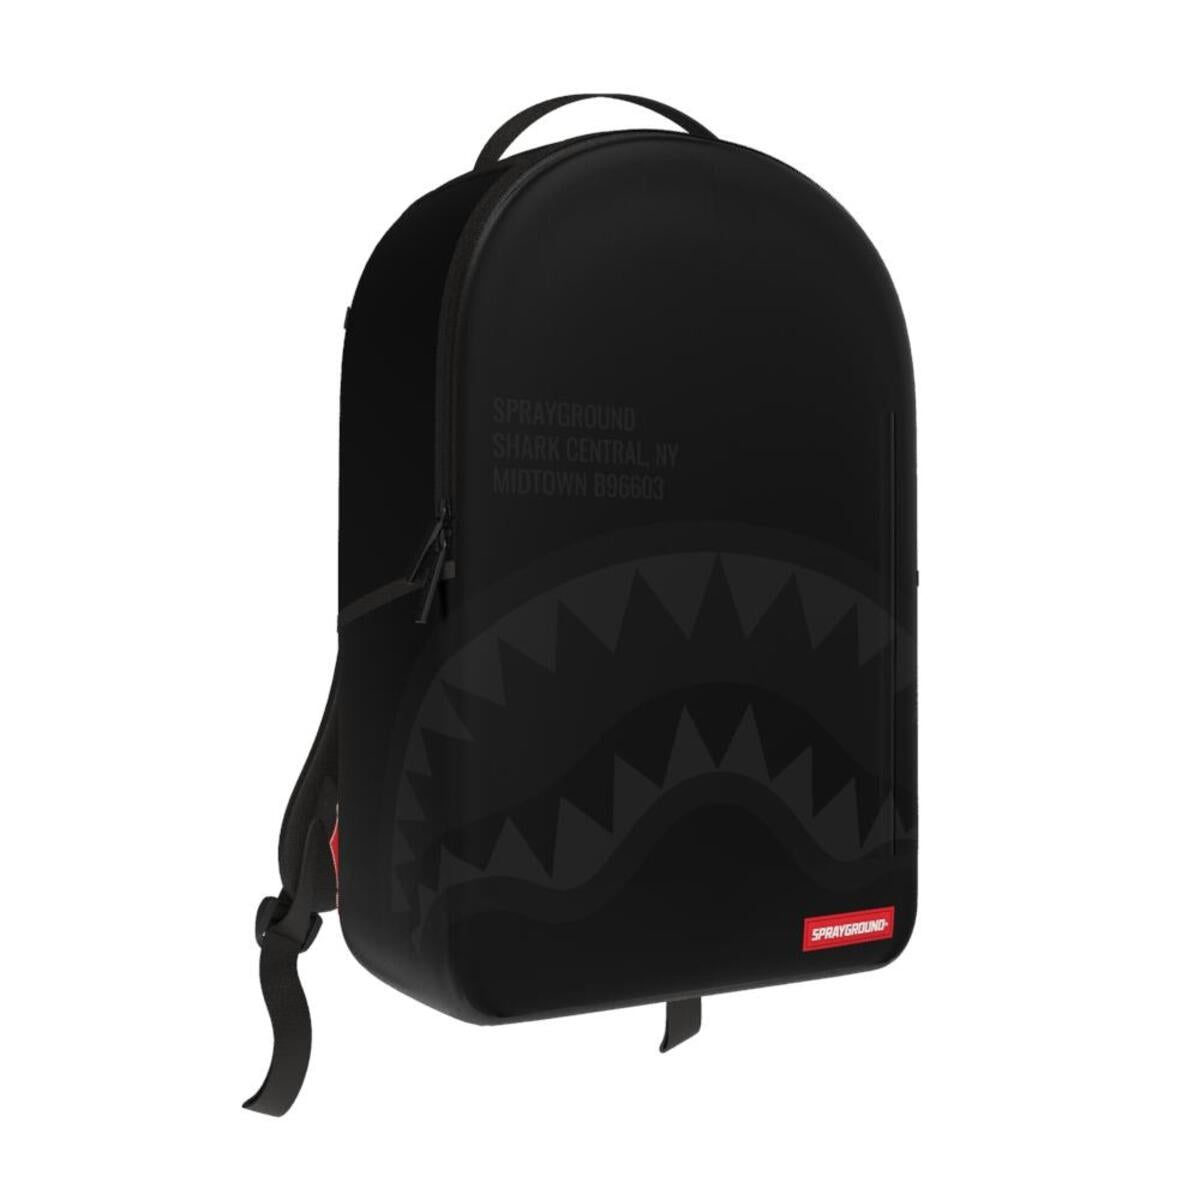 Shark Central 2.0 Backpack Black